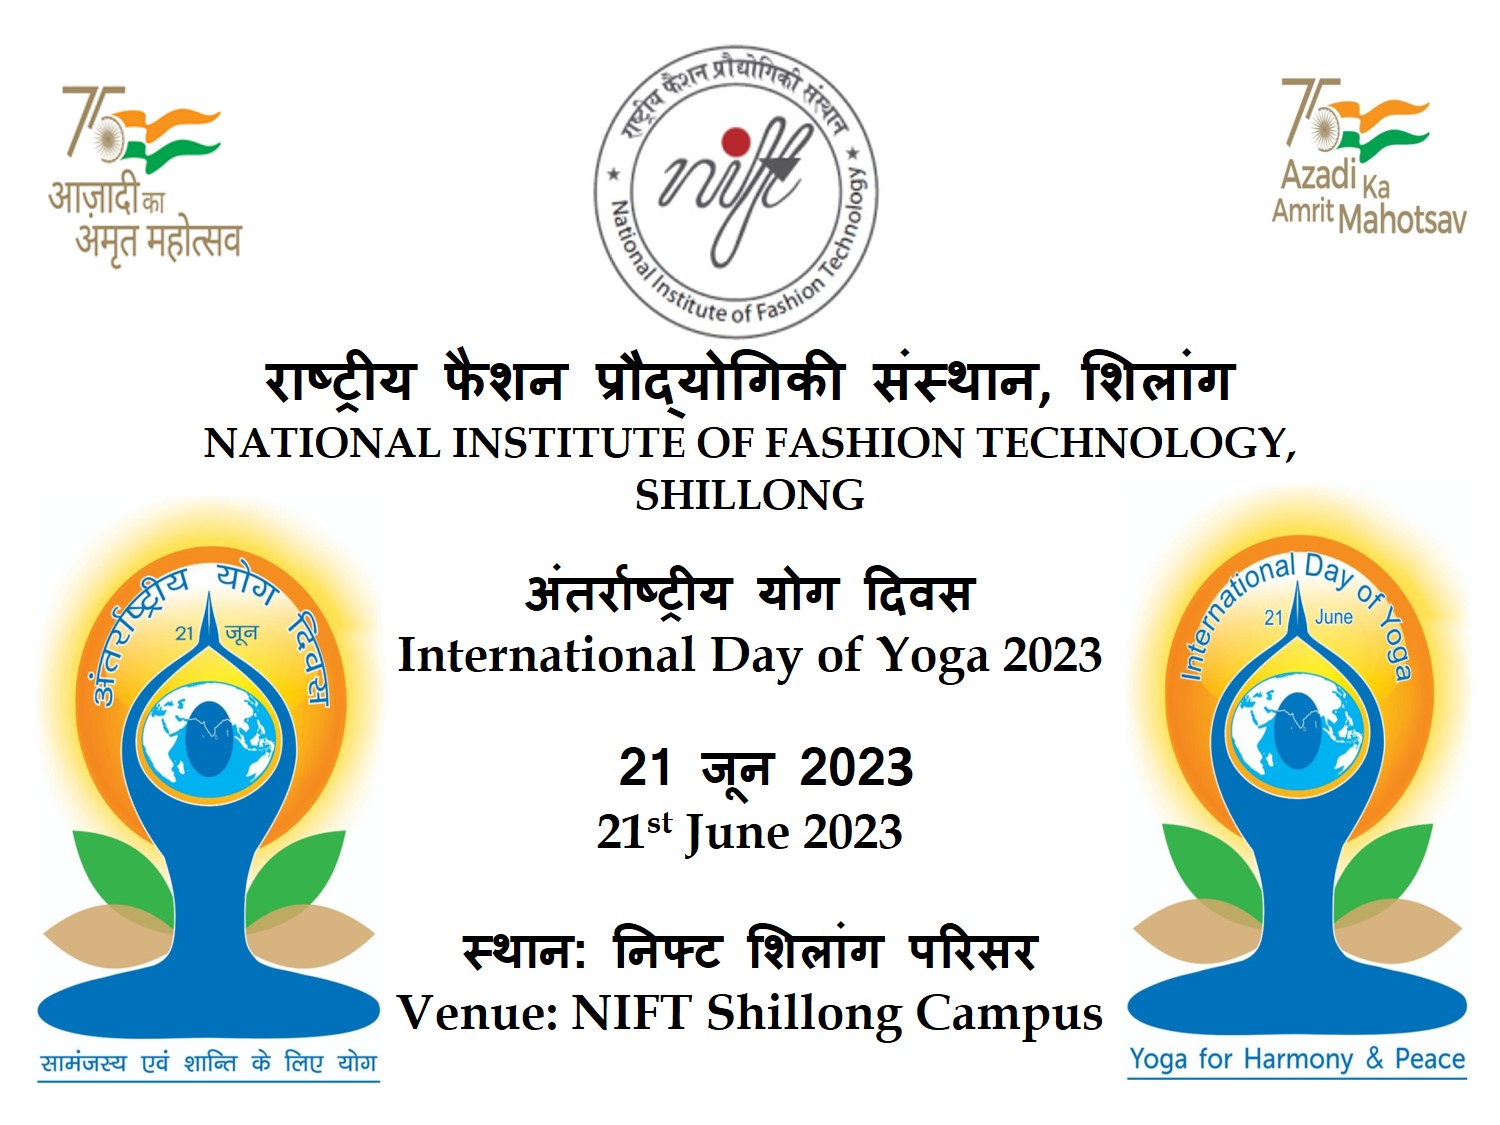 International Day of Yoga 2023, NIFT Shillong